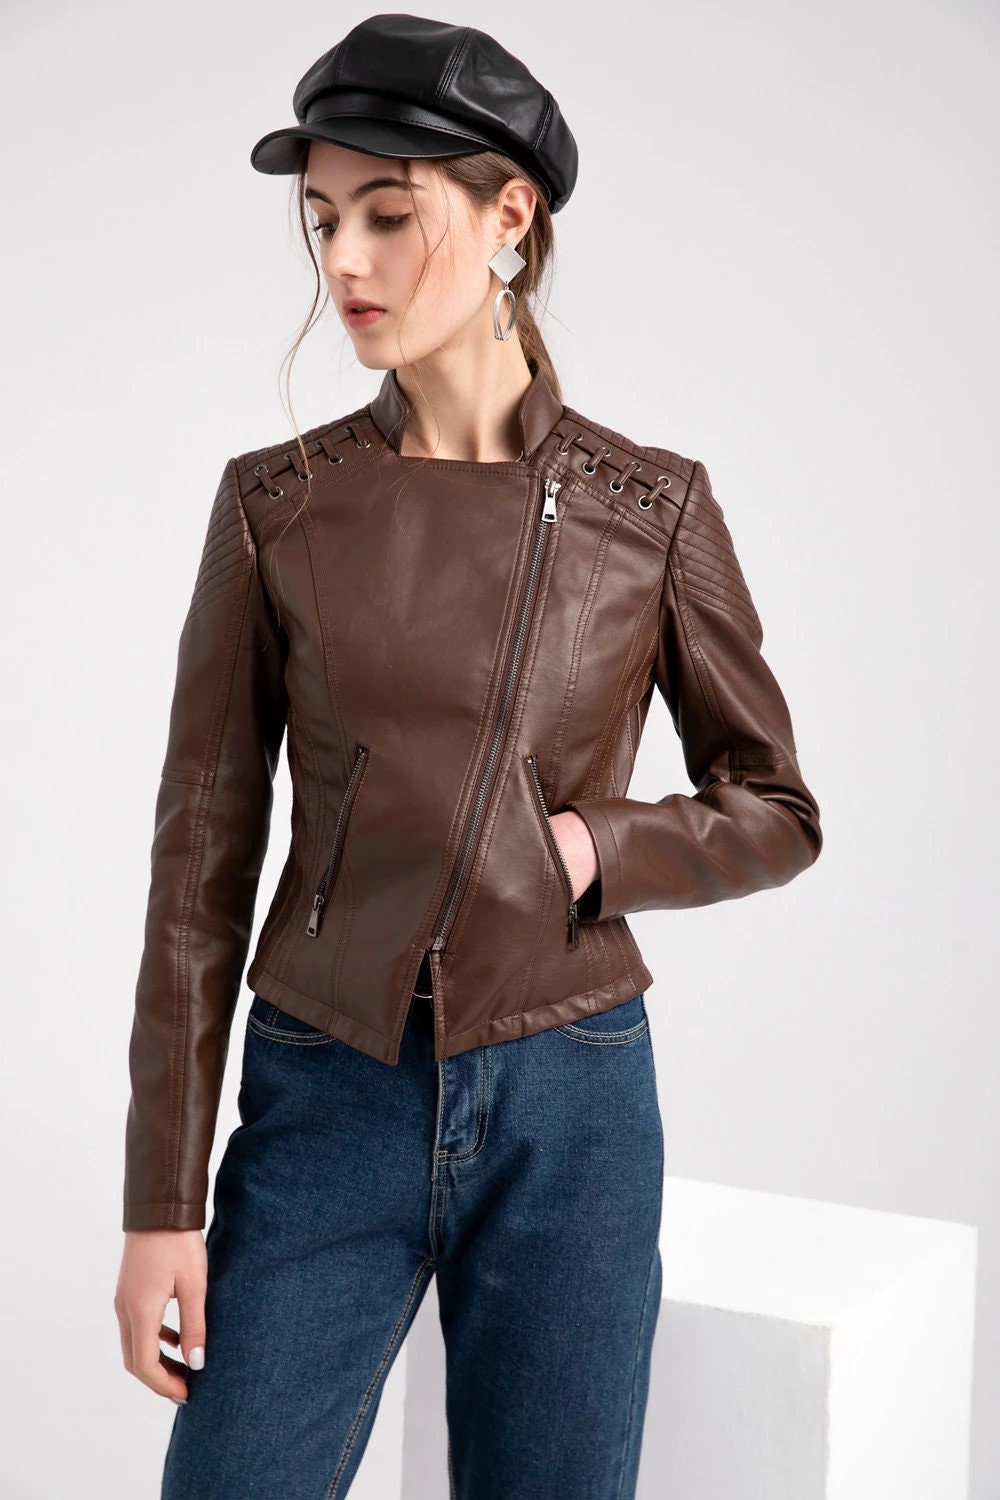 Lambskin Leather Jacket For Women's Biker Jacket Brown Leather Cropped Jacket Leather Coat Slim Fit Leather Jacket | Gift for Women